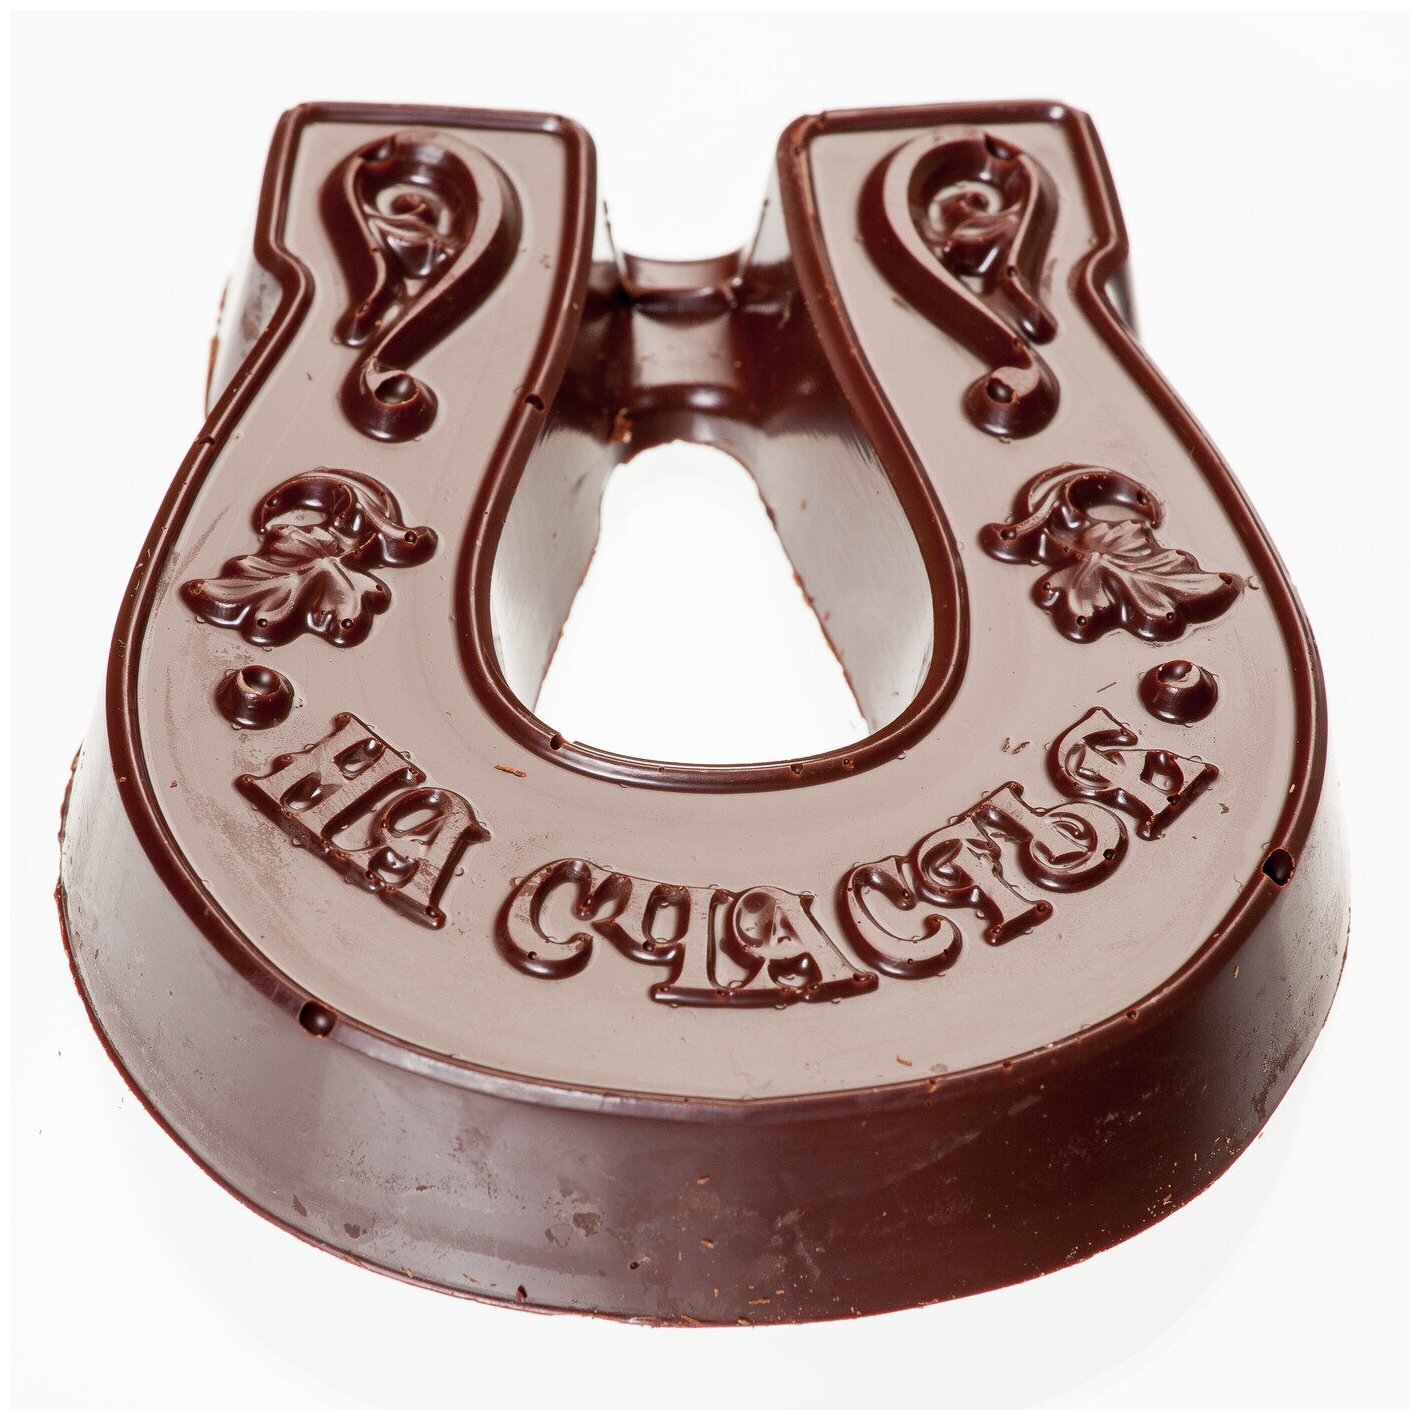 Подарочная шоколадная фигура Frade/Фраде - Подкова На счастье (вес 140 гр) (темный)